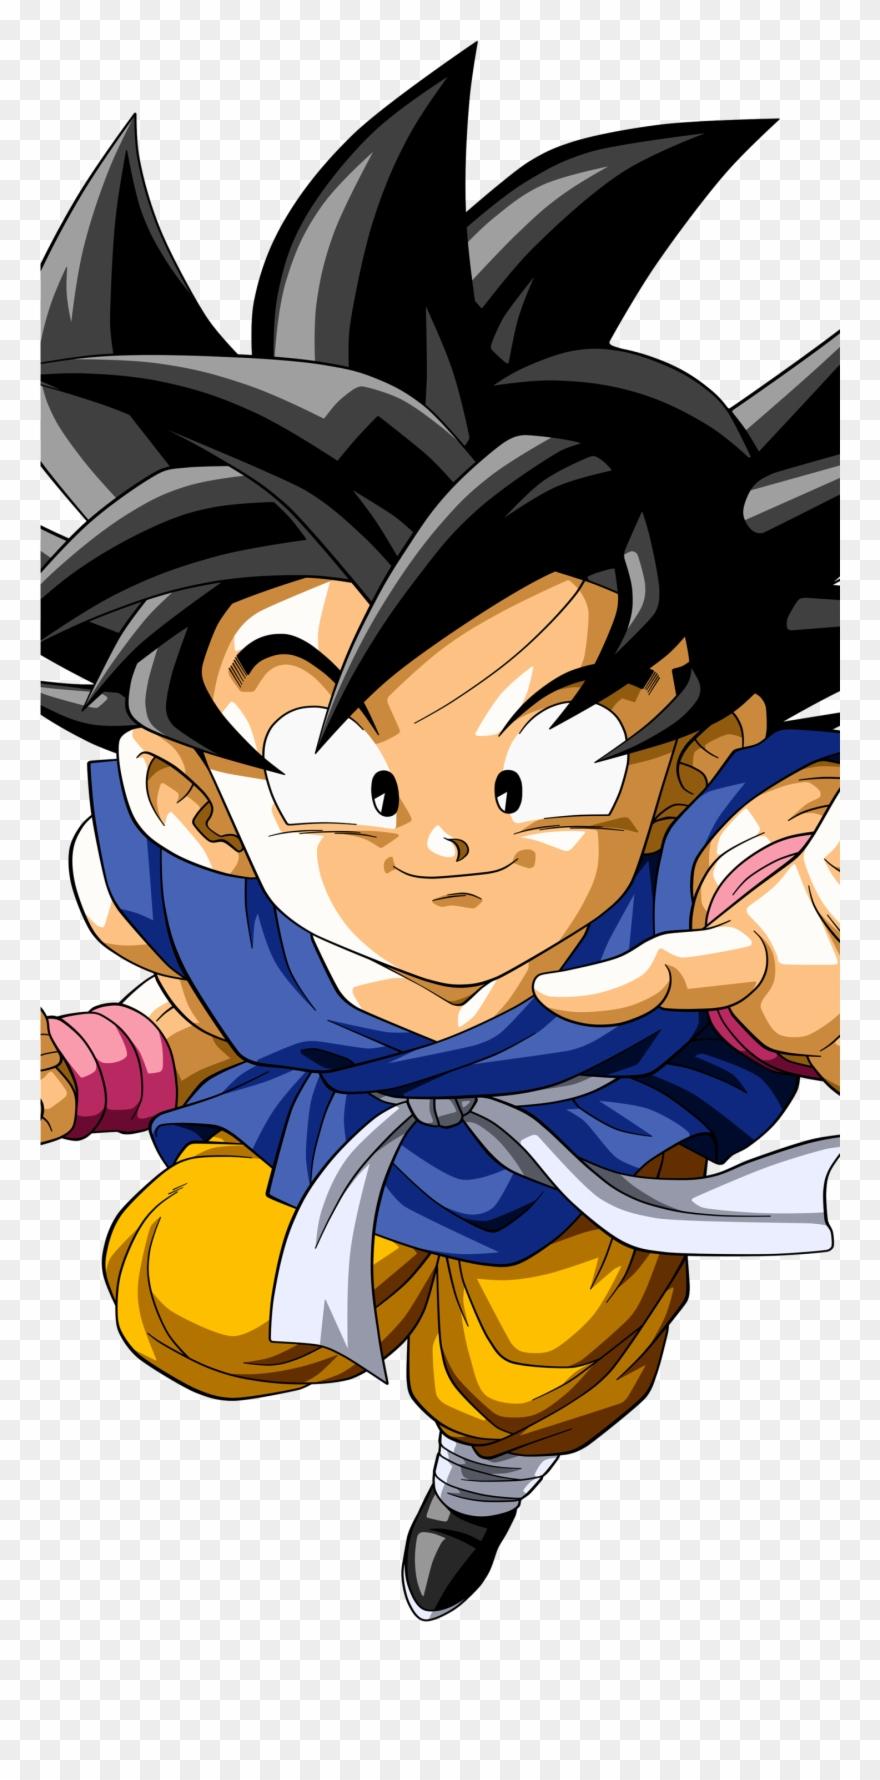 Kid Goku Anime / Dragon Ball Gt Mobile Wallpaper